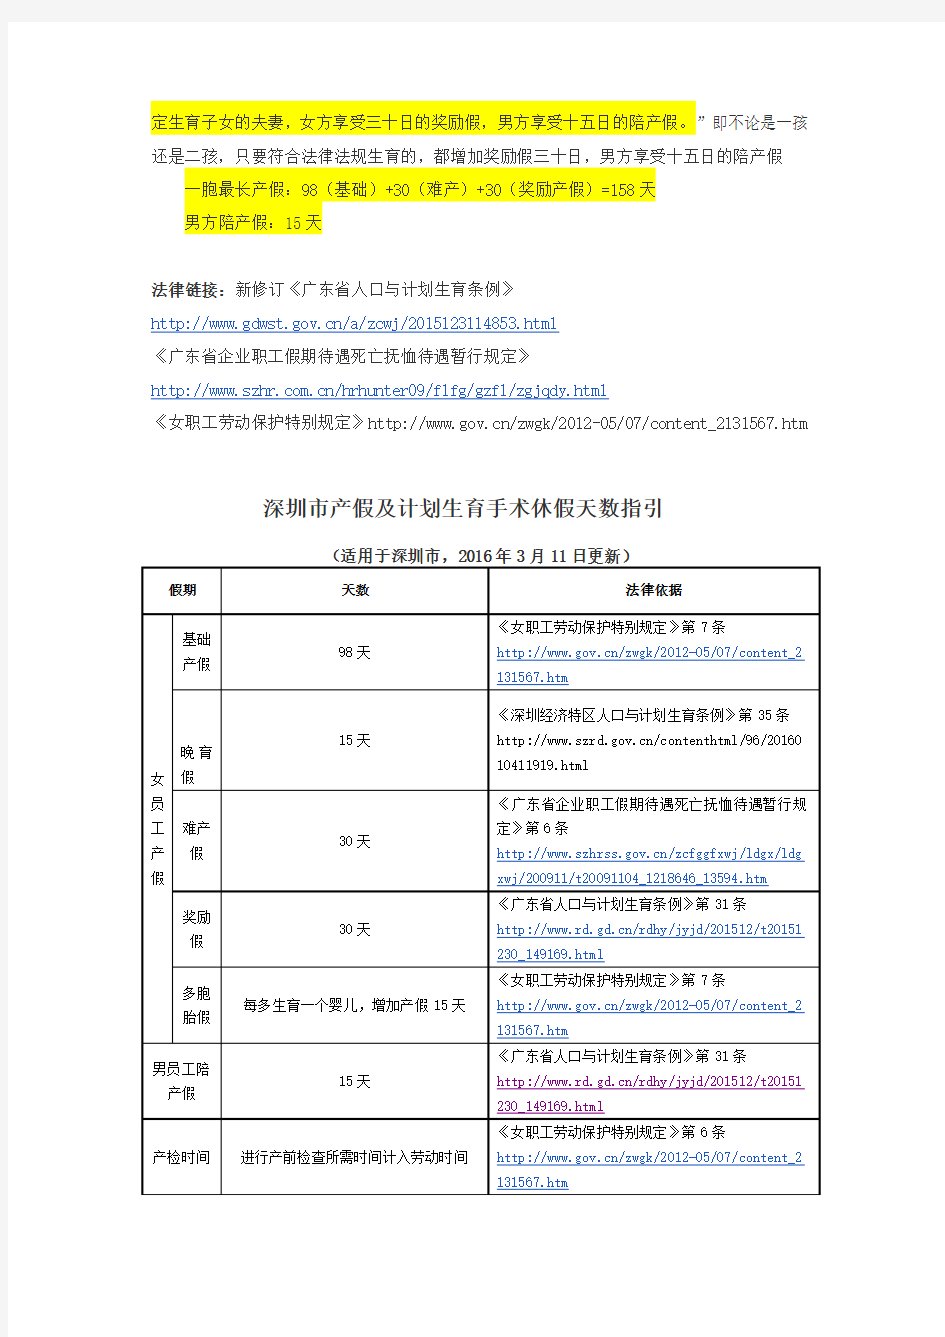 深圳市婚假、产假及计划生育手术休假天数指引 (1)